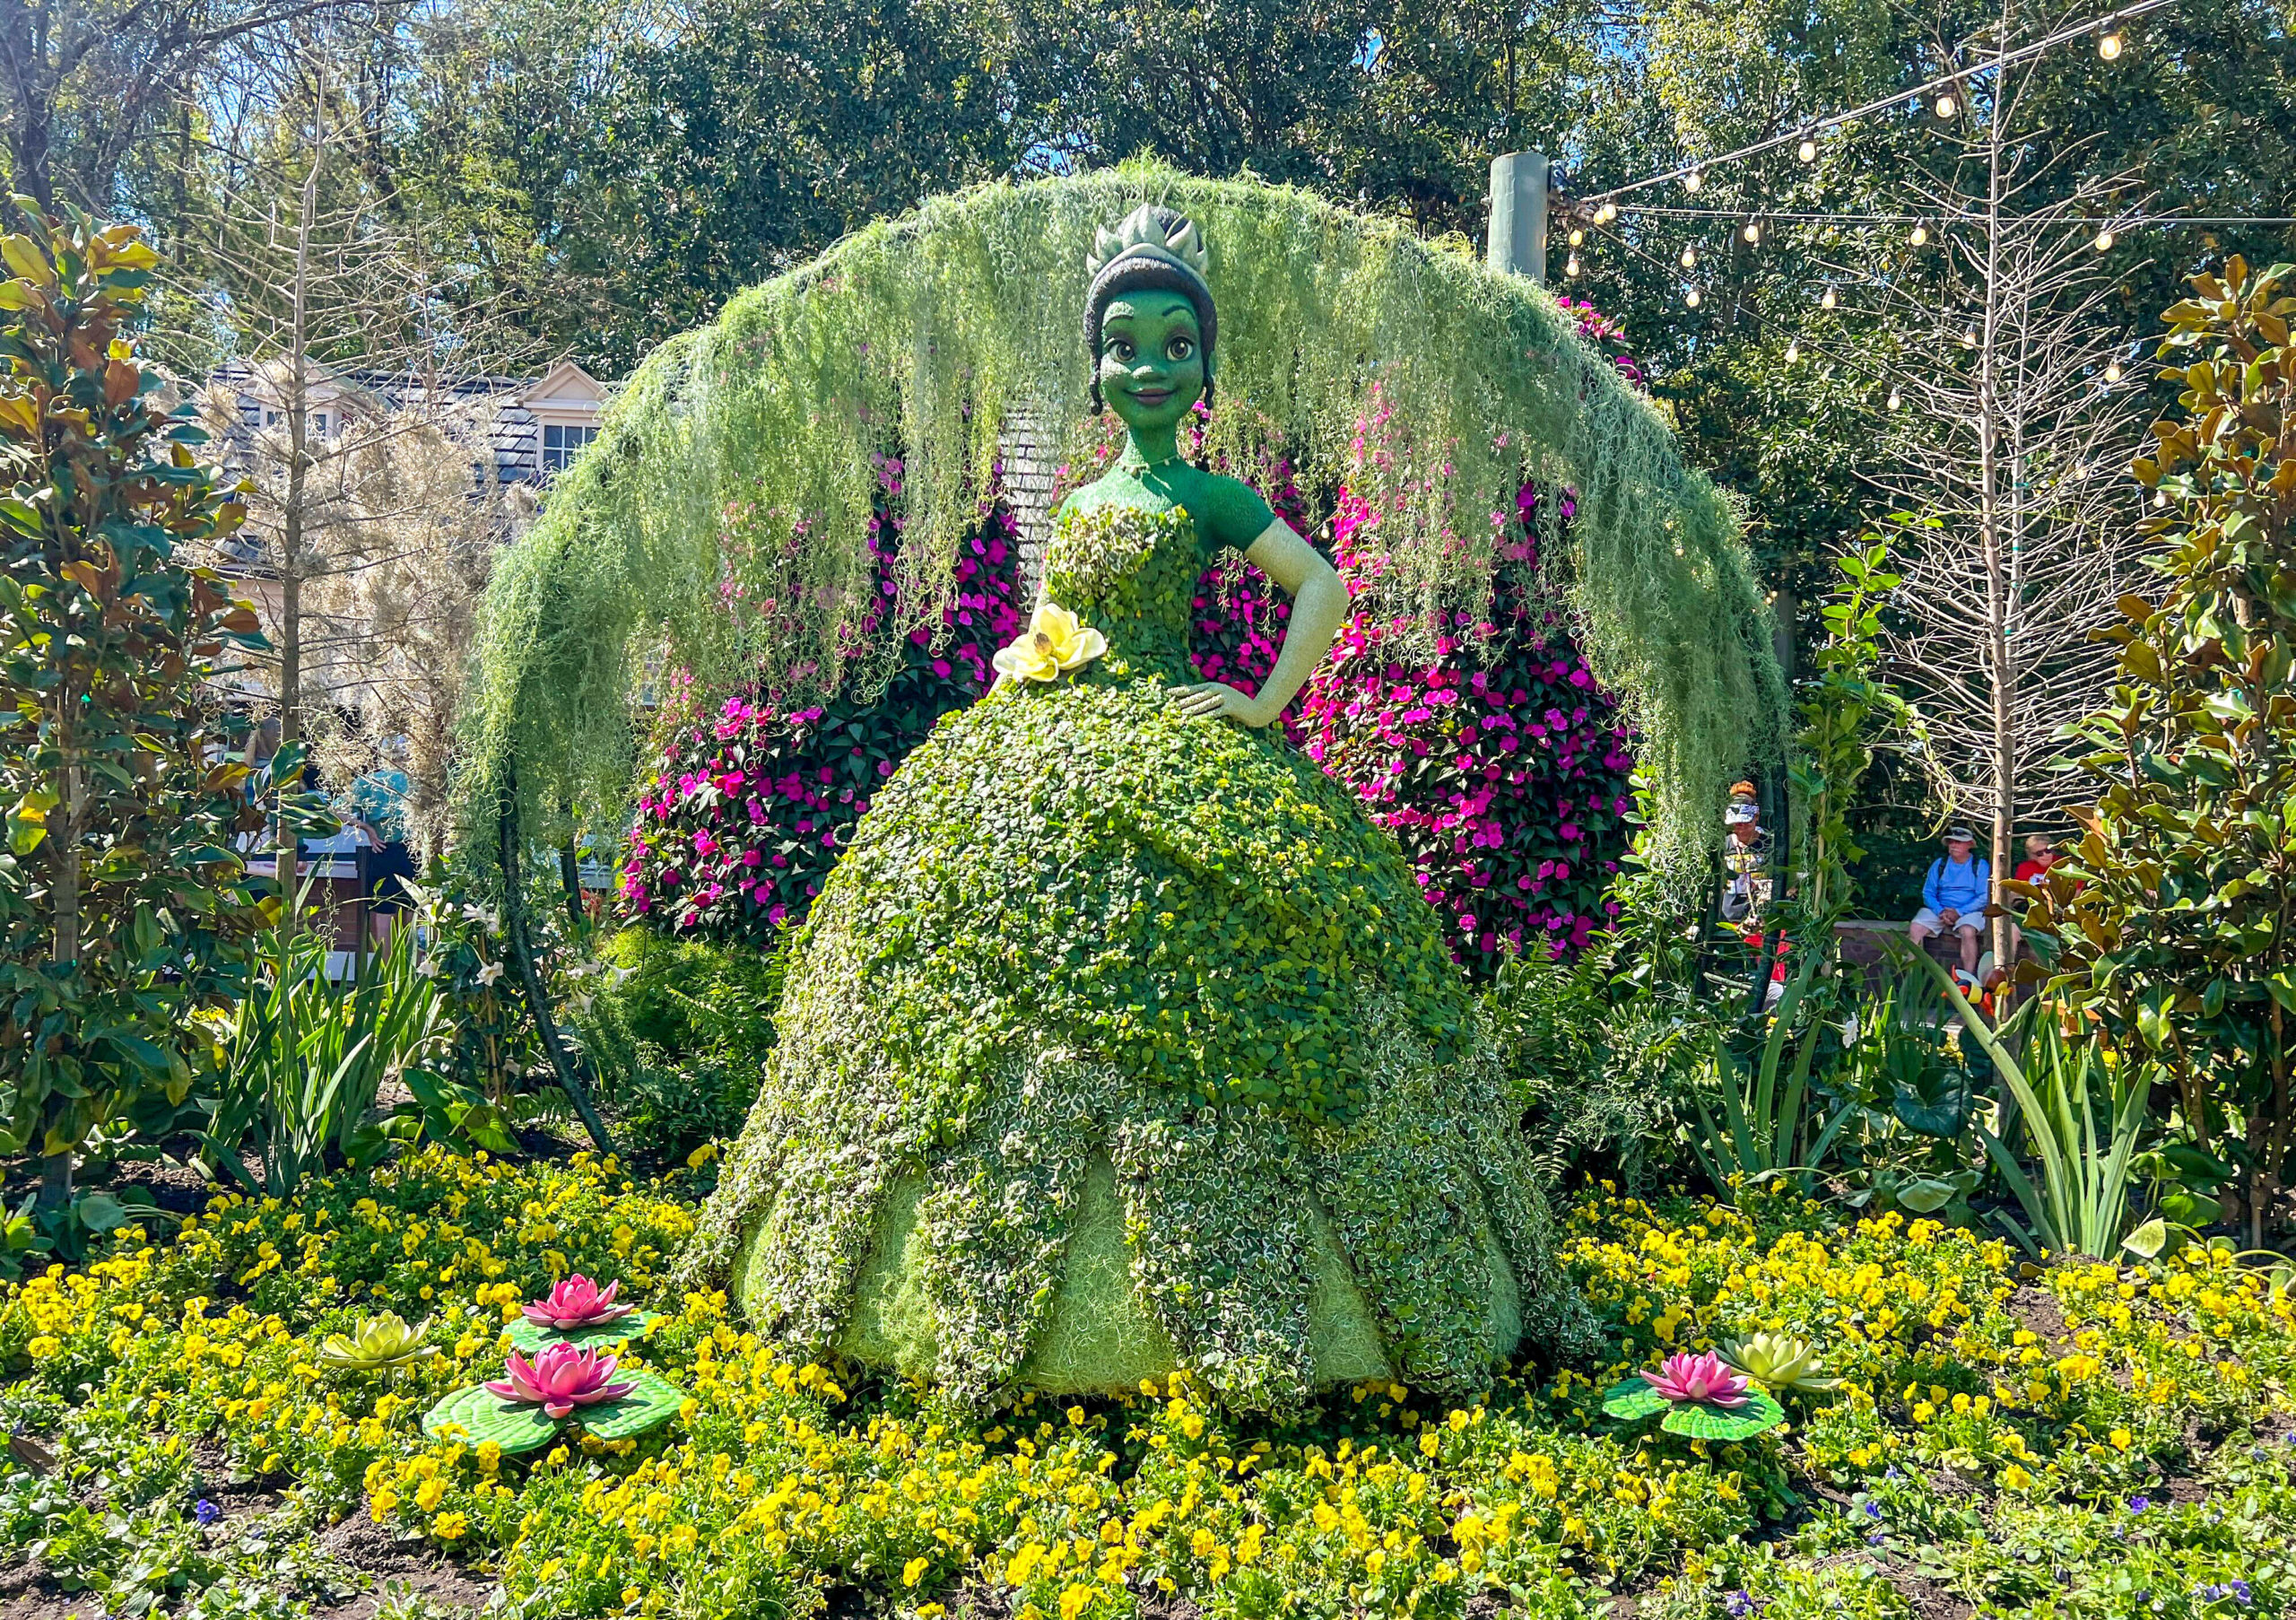 Princess Tiana Topiary